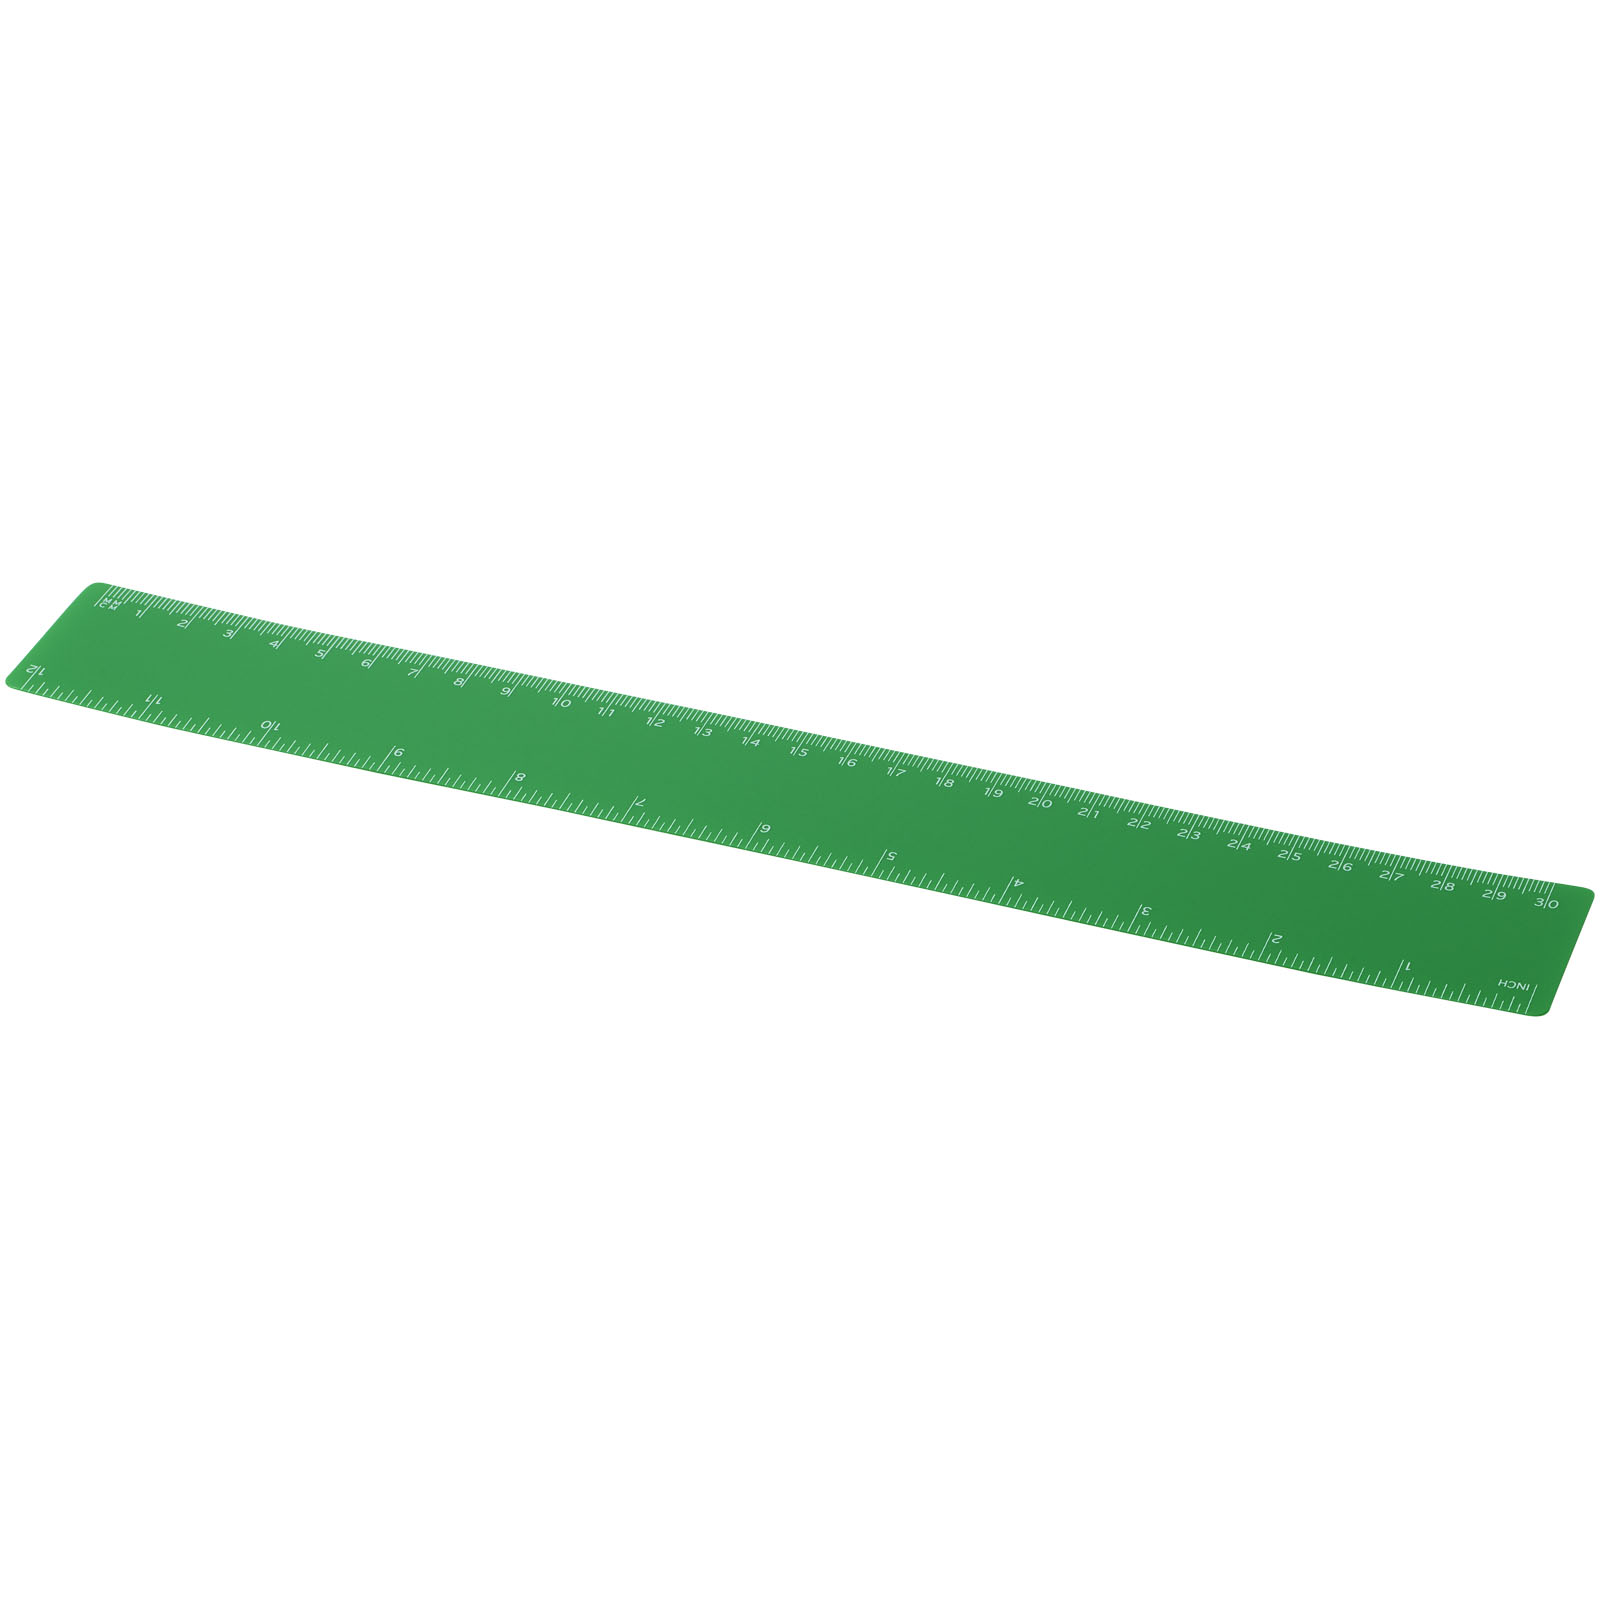 Advertising Desk Accessories - Rothko 30 cm plastic ruler - 0